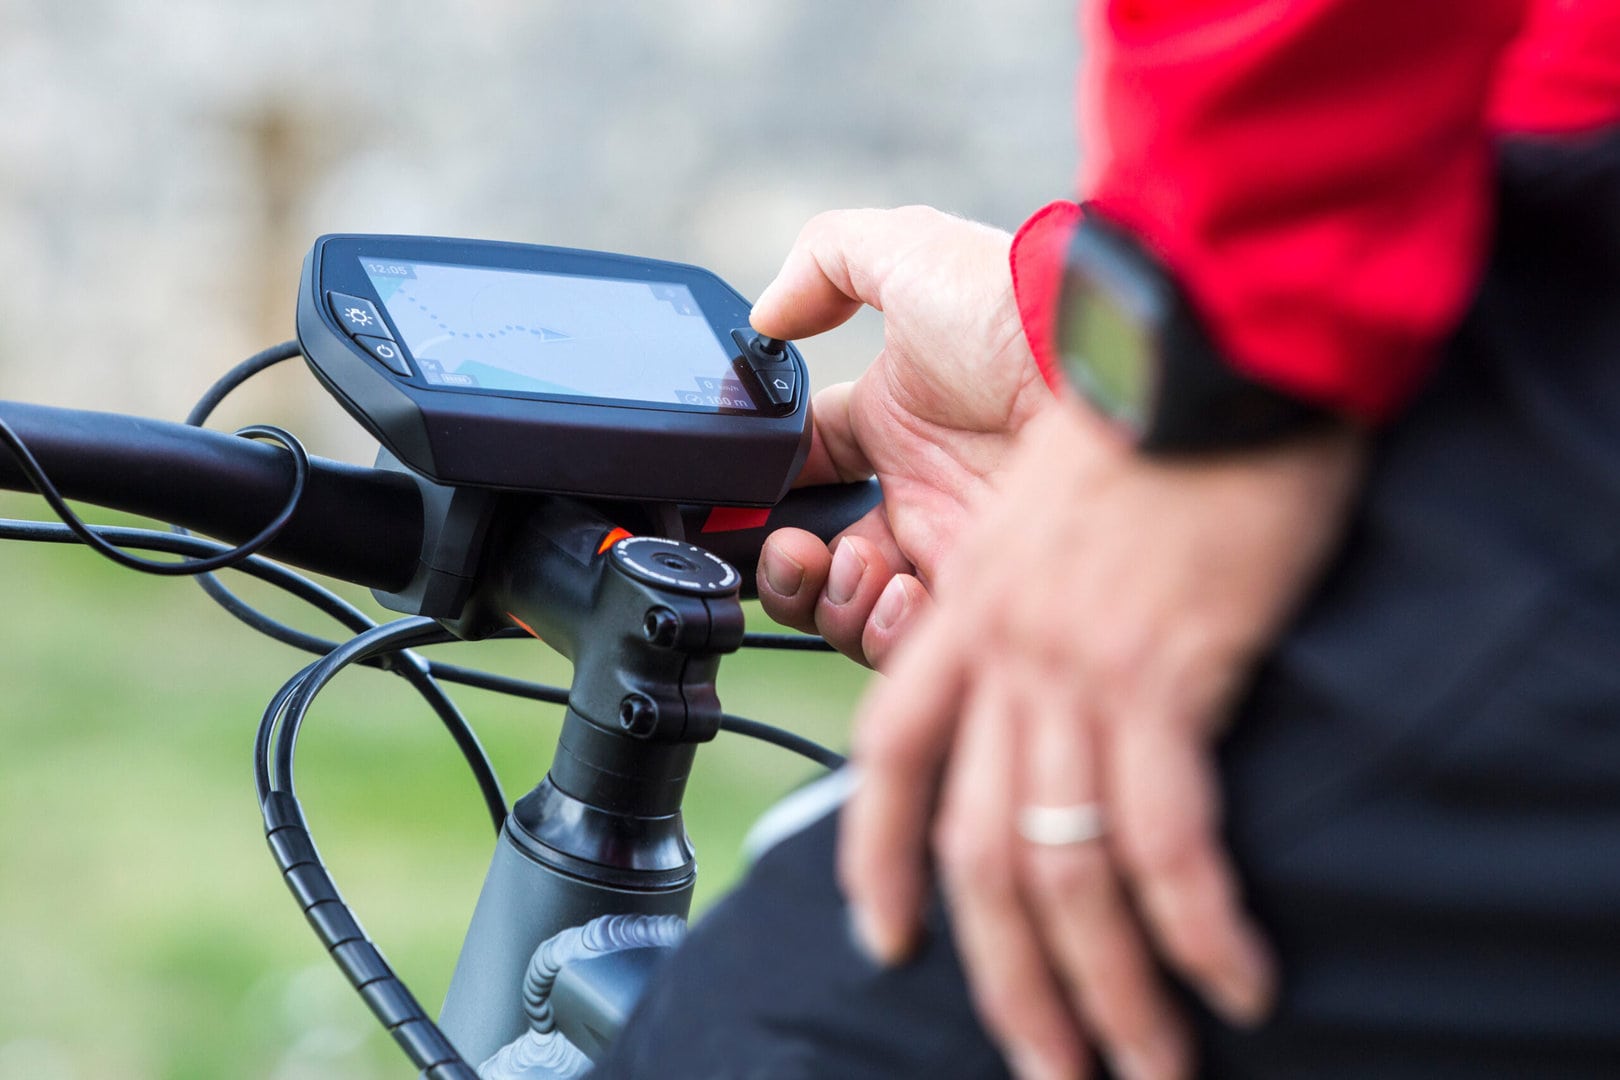 Die besten Fahrrad-Navi-Apps: 5 Empfehlungen für eure nächste Radtour